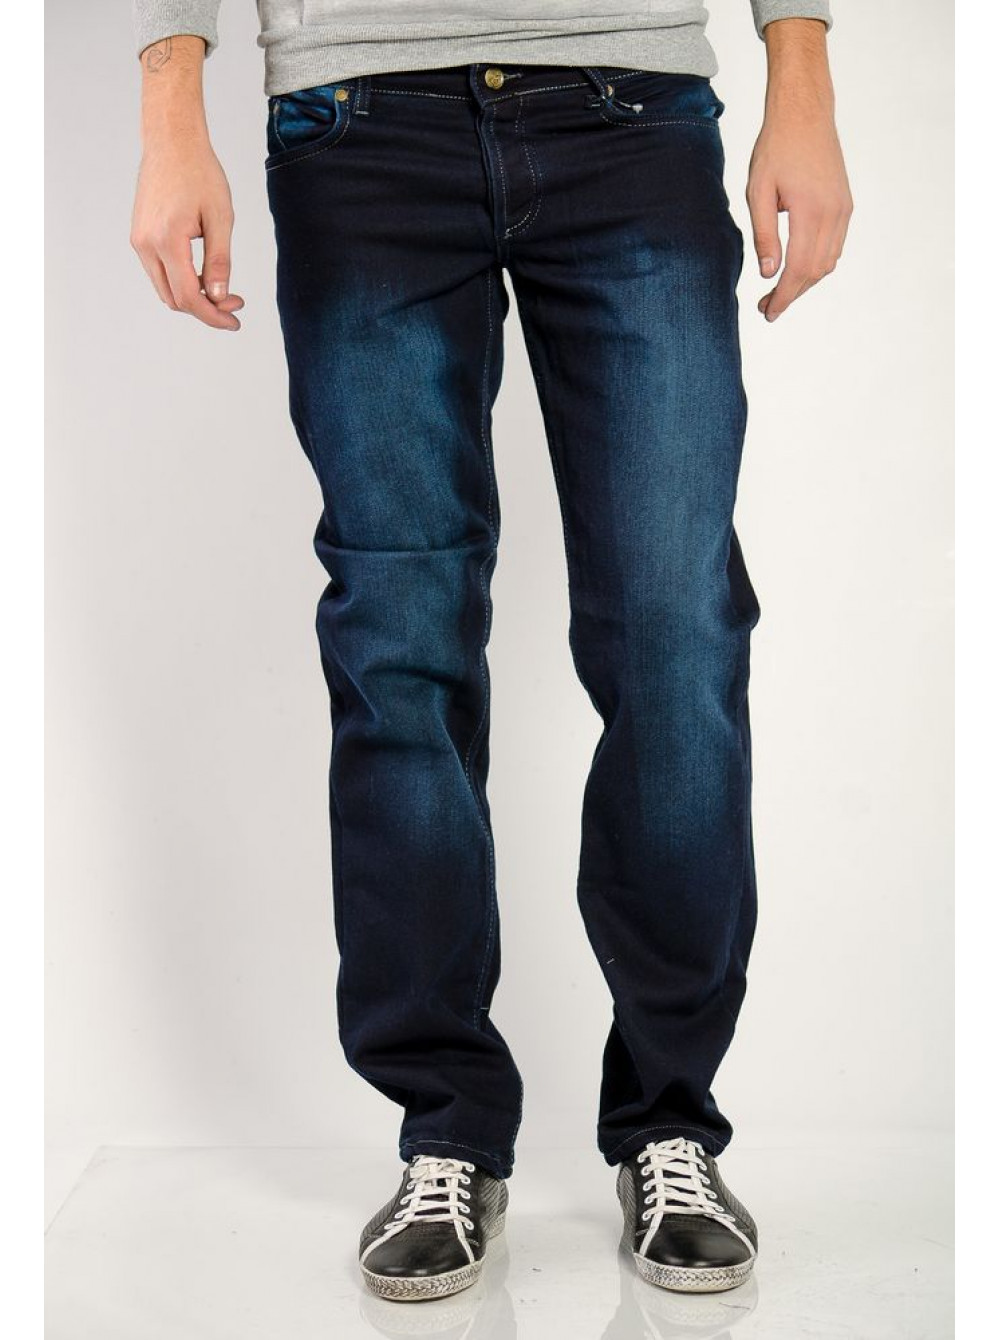 Джинсы мужские классические купить в москве недорого. Мужские джинсы. Синие джинсы мужские. Темно синие джинсы мужские. Джинсы мужские классические.